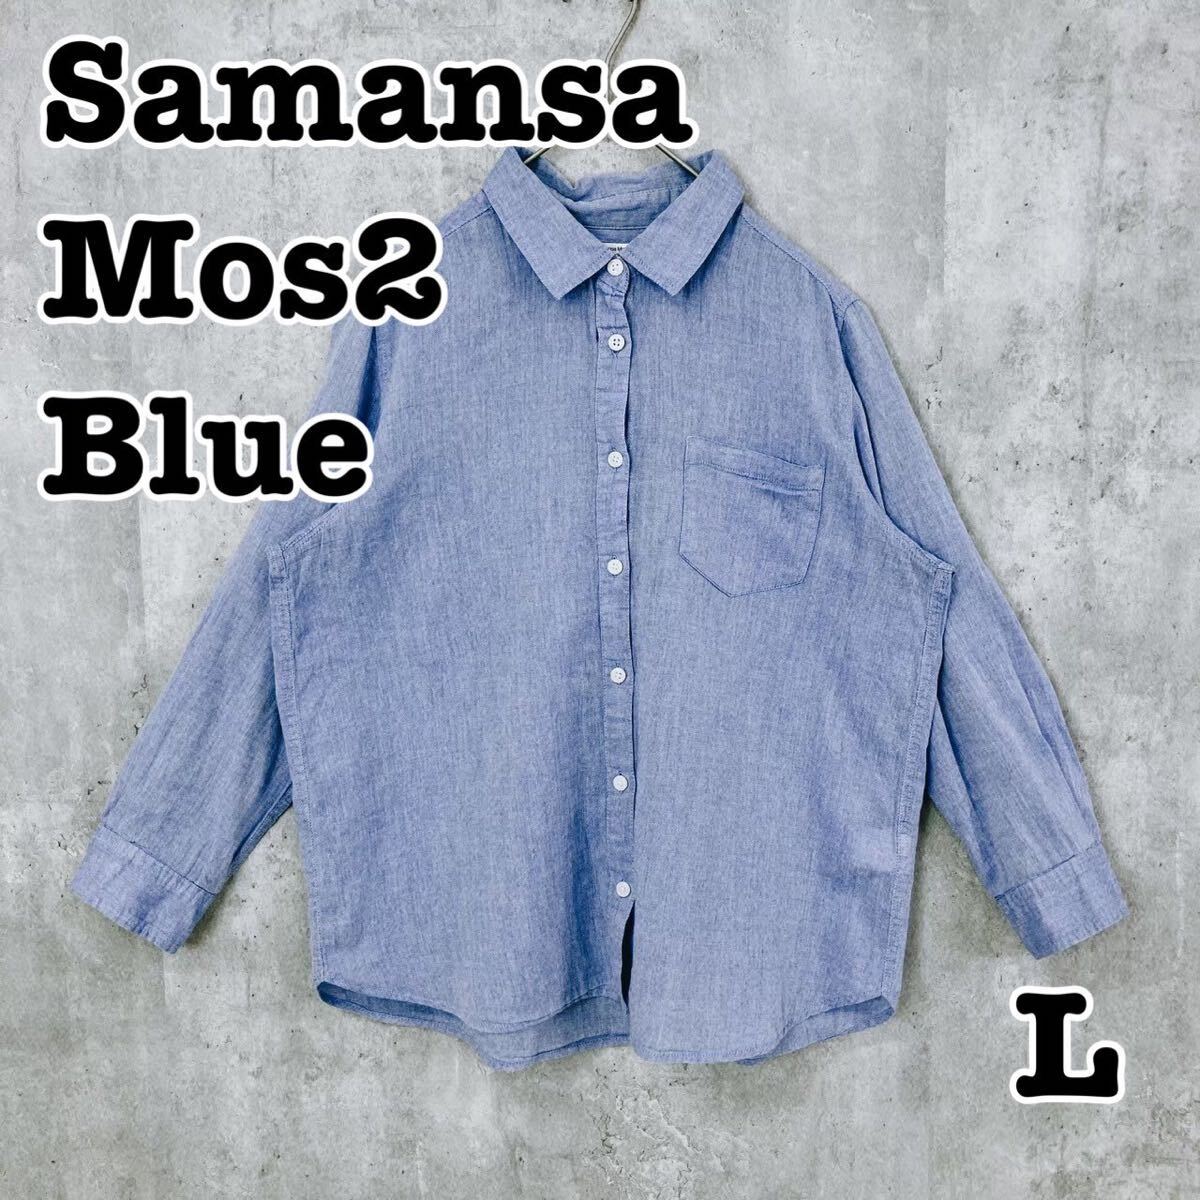 Samansa Mos2 blue サマンサモスモスブルー ボタンシャツ 長袖 SM2 無地 L 送料無料